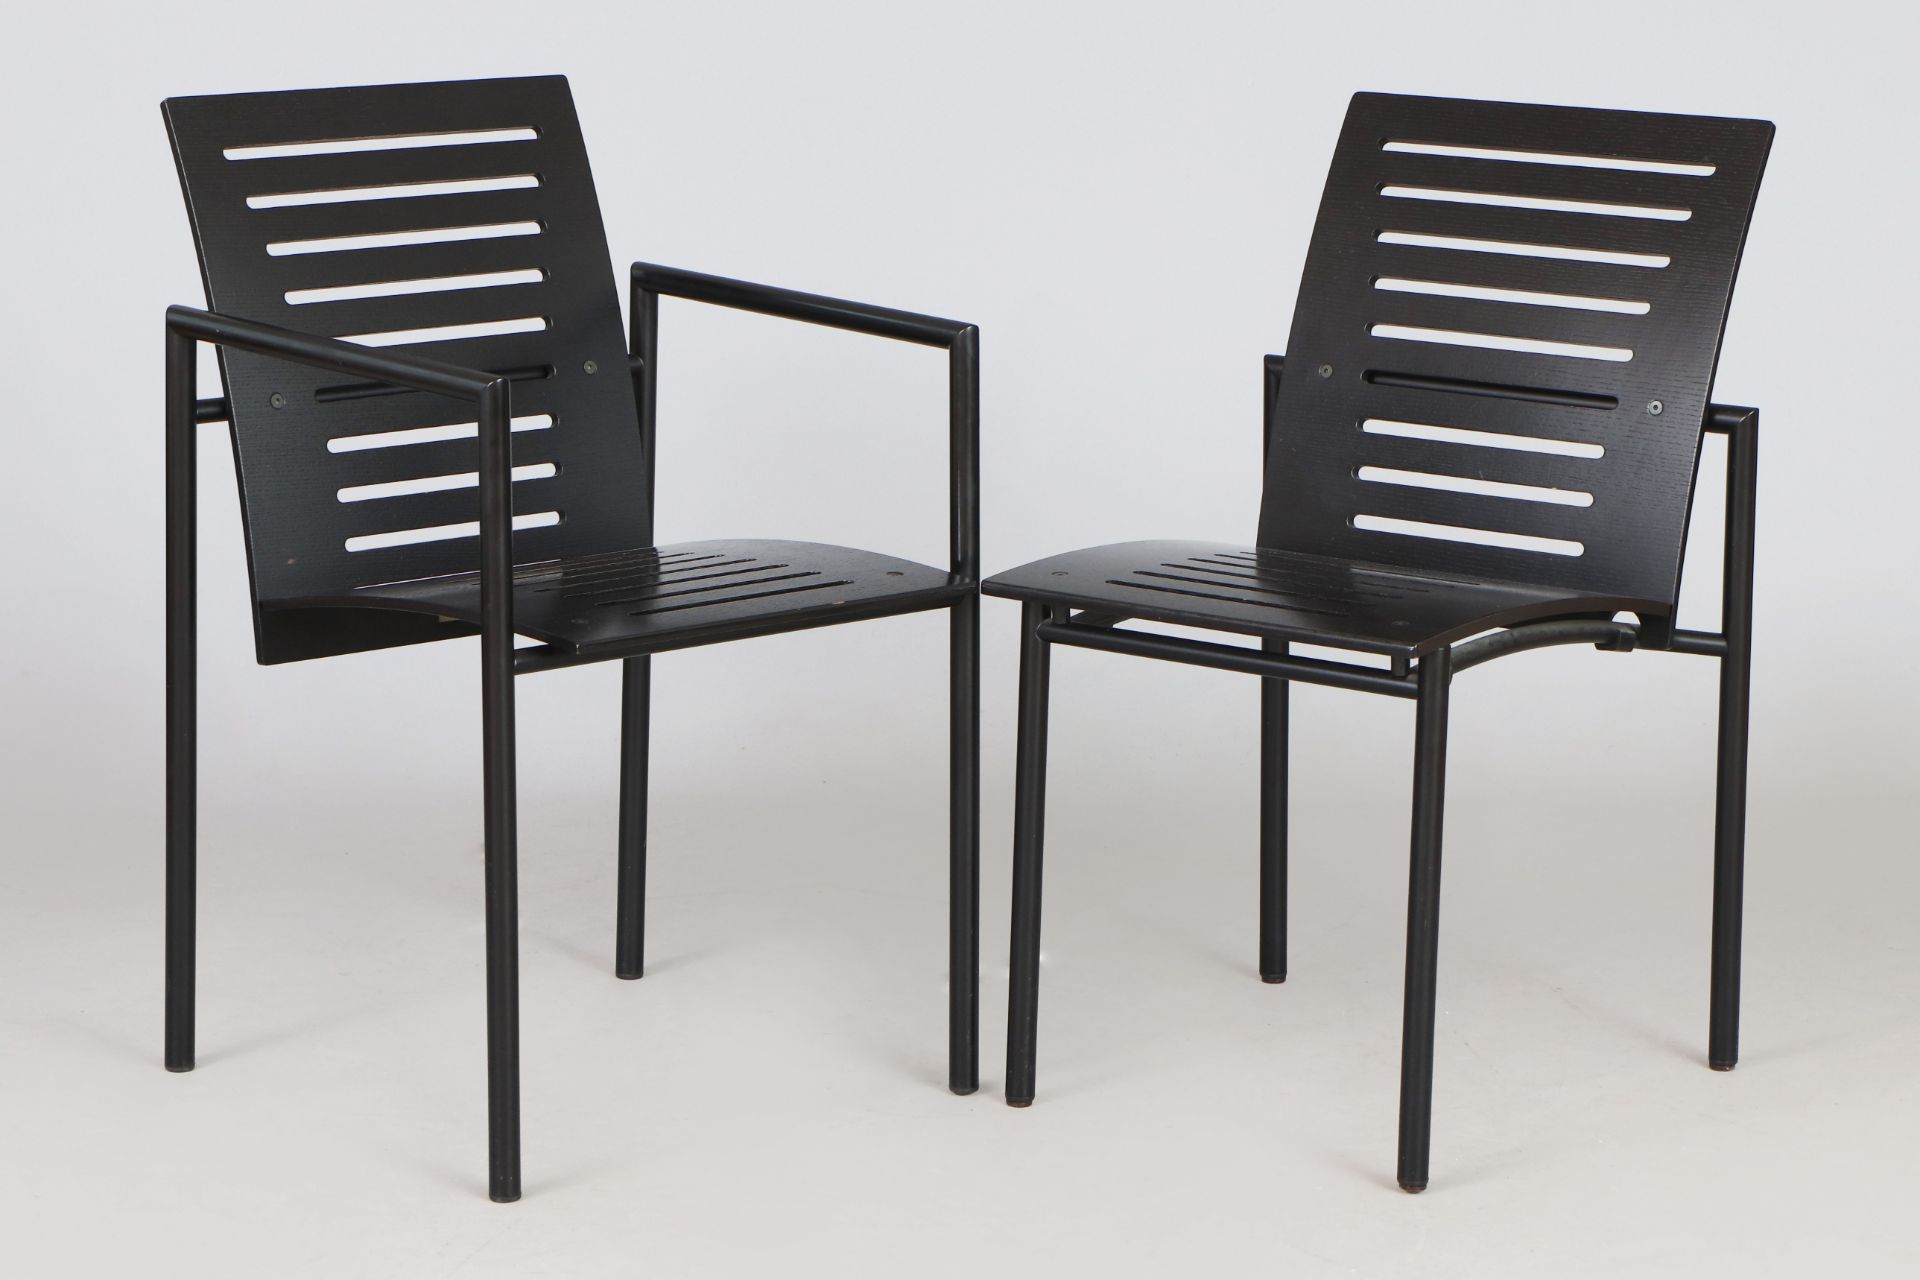 6 Stühle nach Entwurf Thomas Albrecht für ATOLL - Image 2 of 3